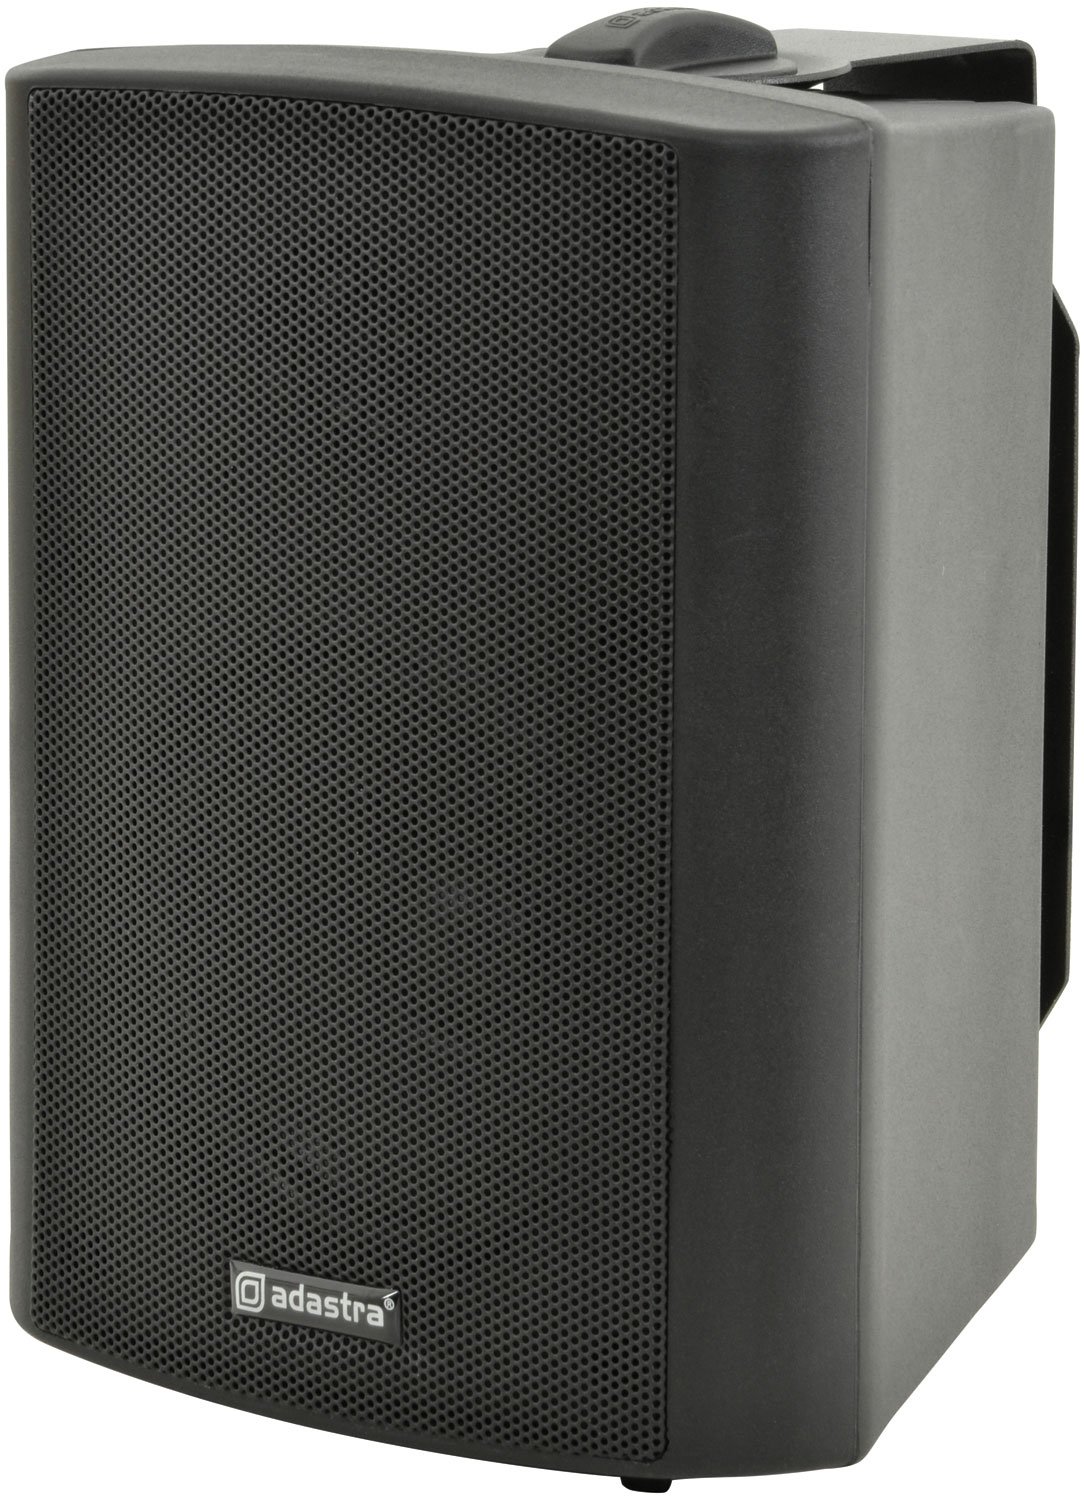 BP Series - 100V Weatherproof Speakers BP4V-B 100V 4" background speaker black